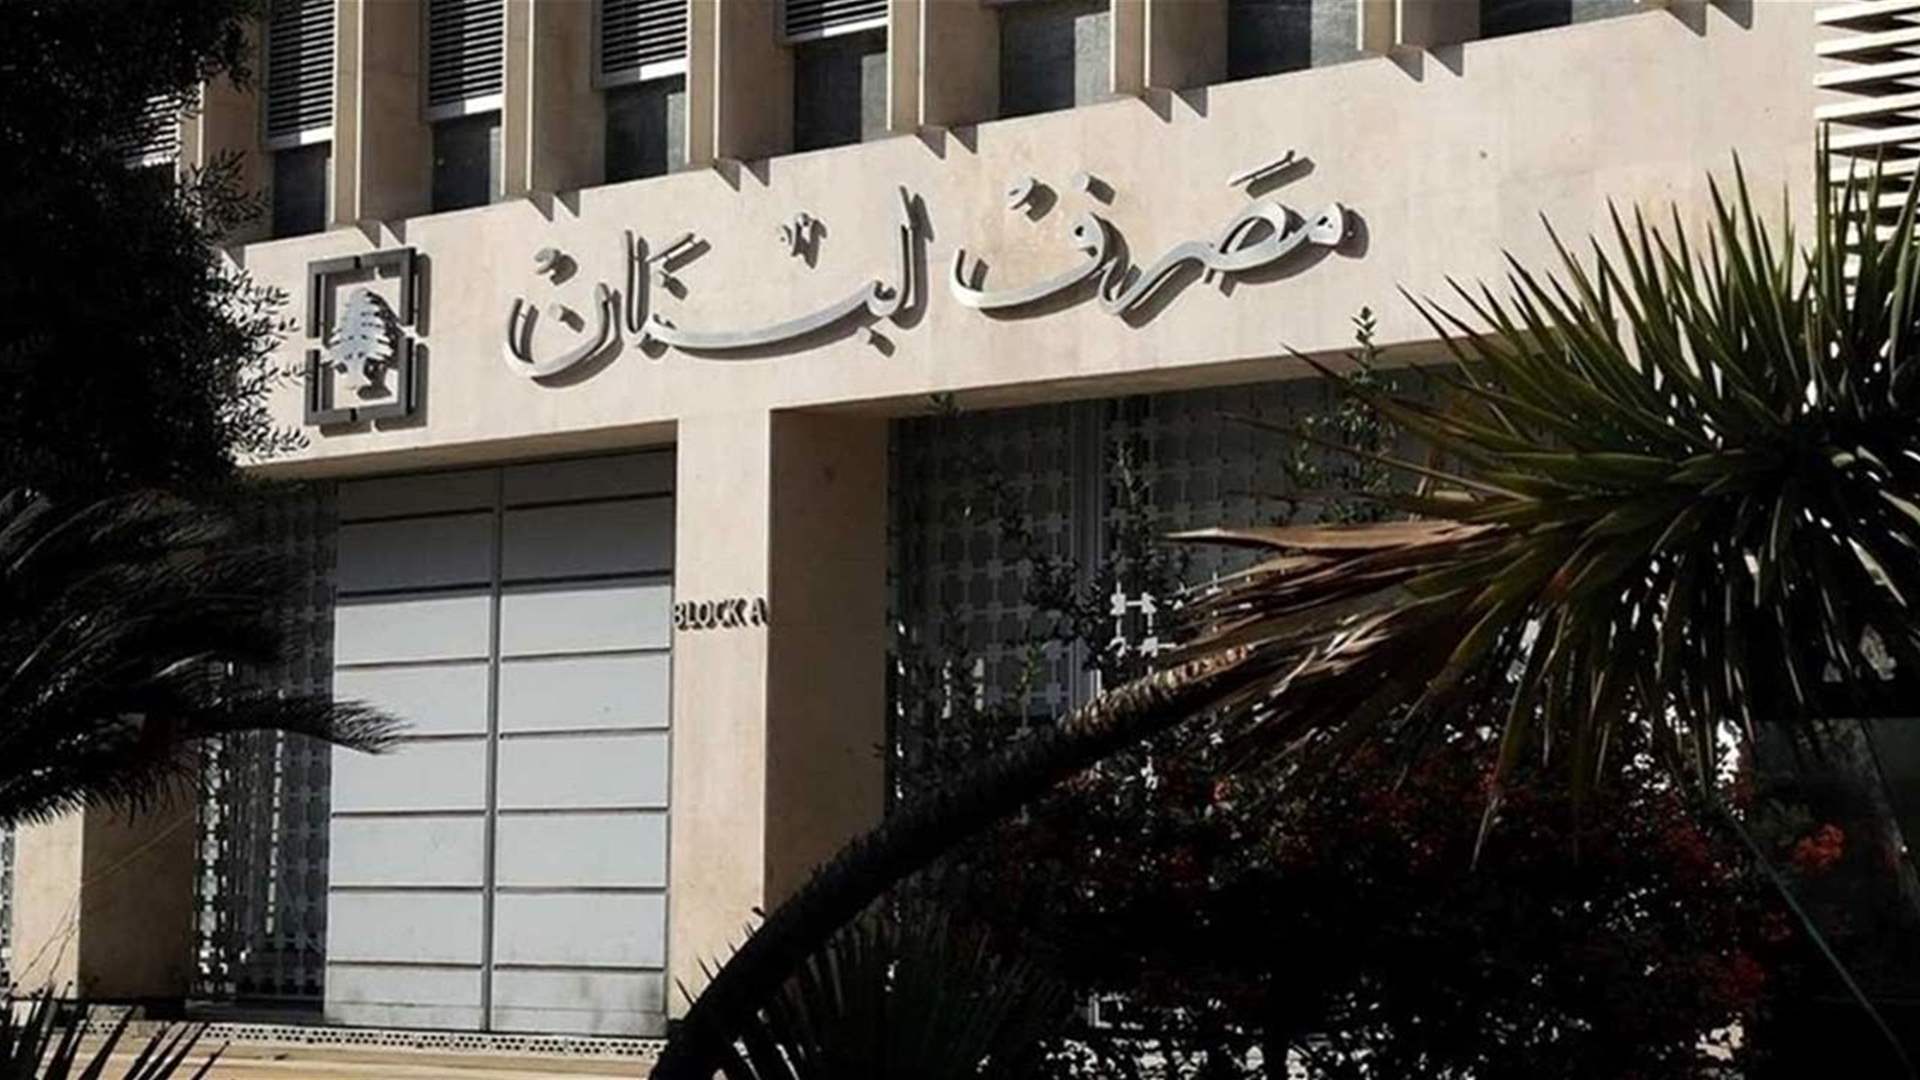 مصرف لبنان: حجم التداول على Sayrafa بلغ اليوم 218 مليون دولار بمعدل 86200 ليرة لبنانية للدولار الواحد